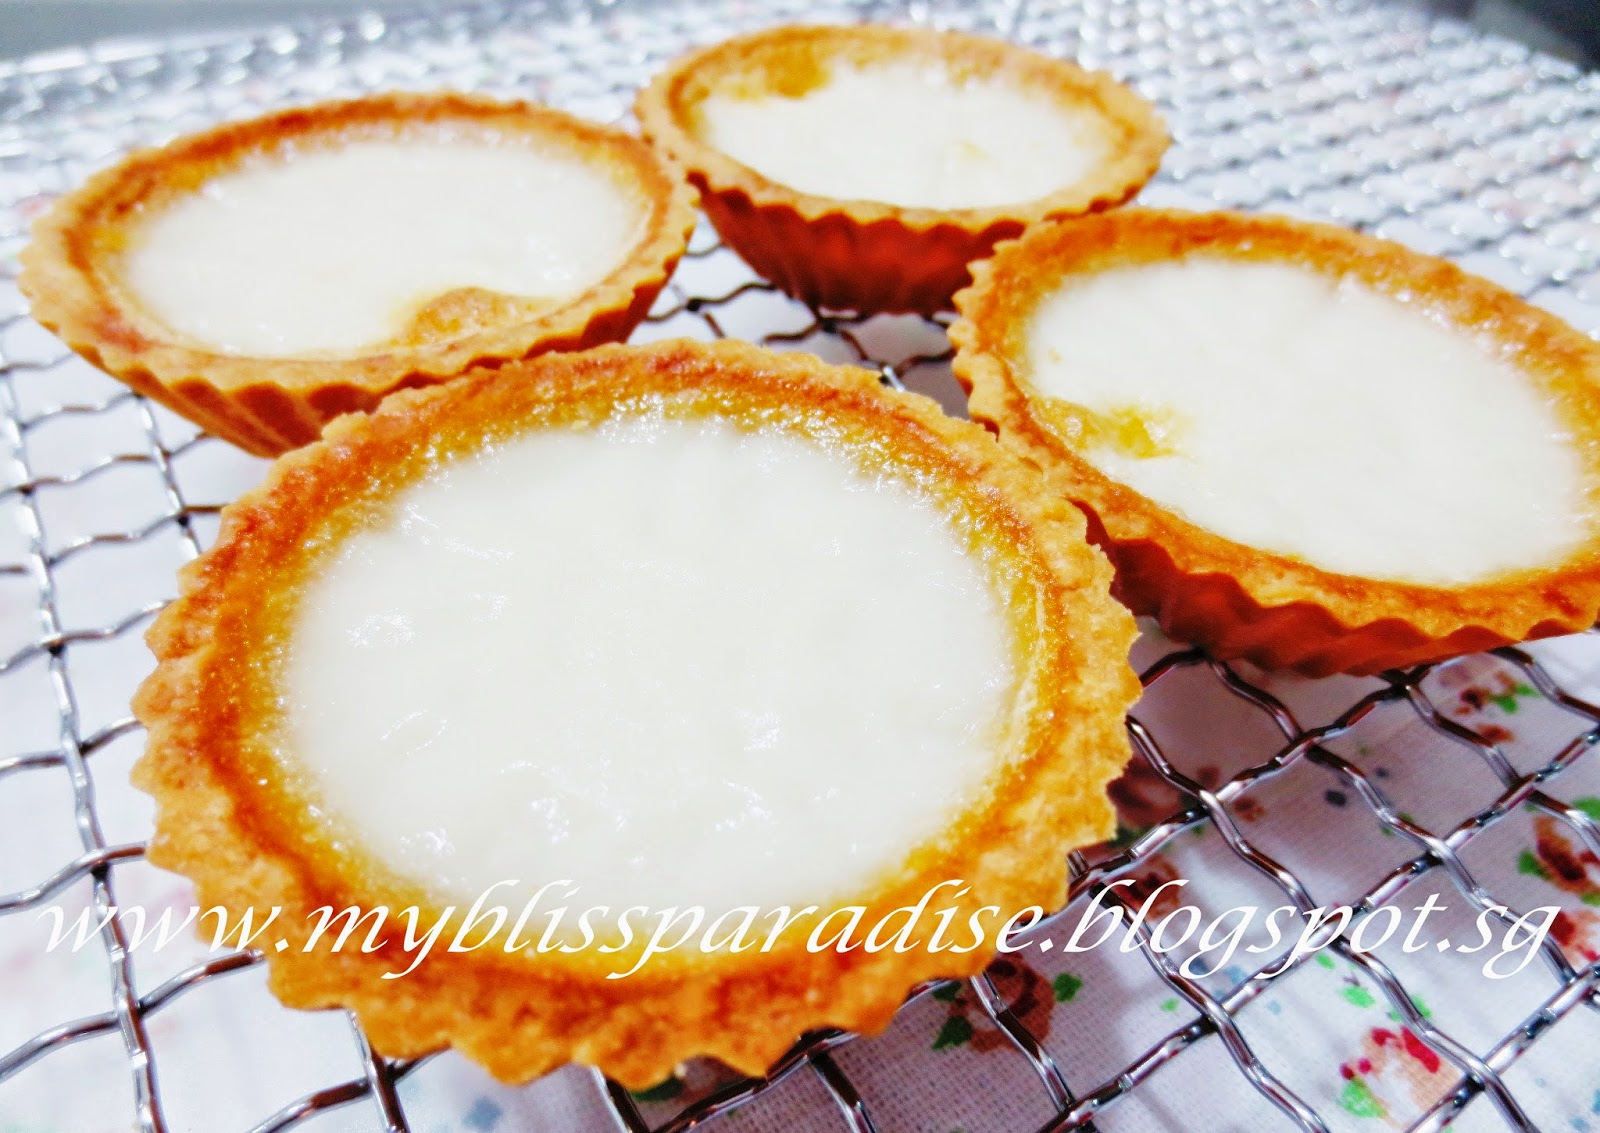 http://myblissparadise.blogspot.sg/2014/06/angel-milky-egg-white-tarts-27-jun-14.html